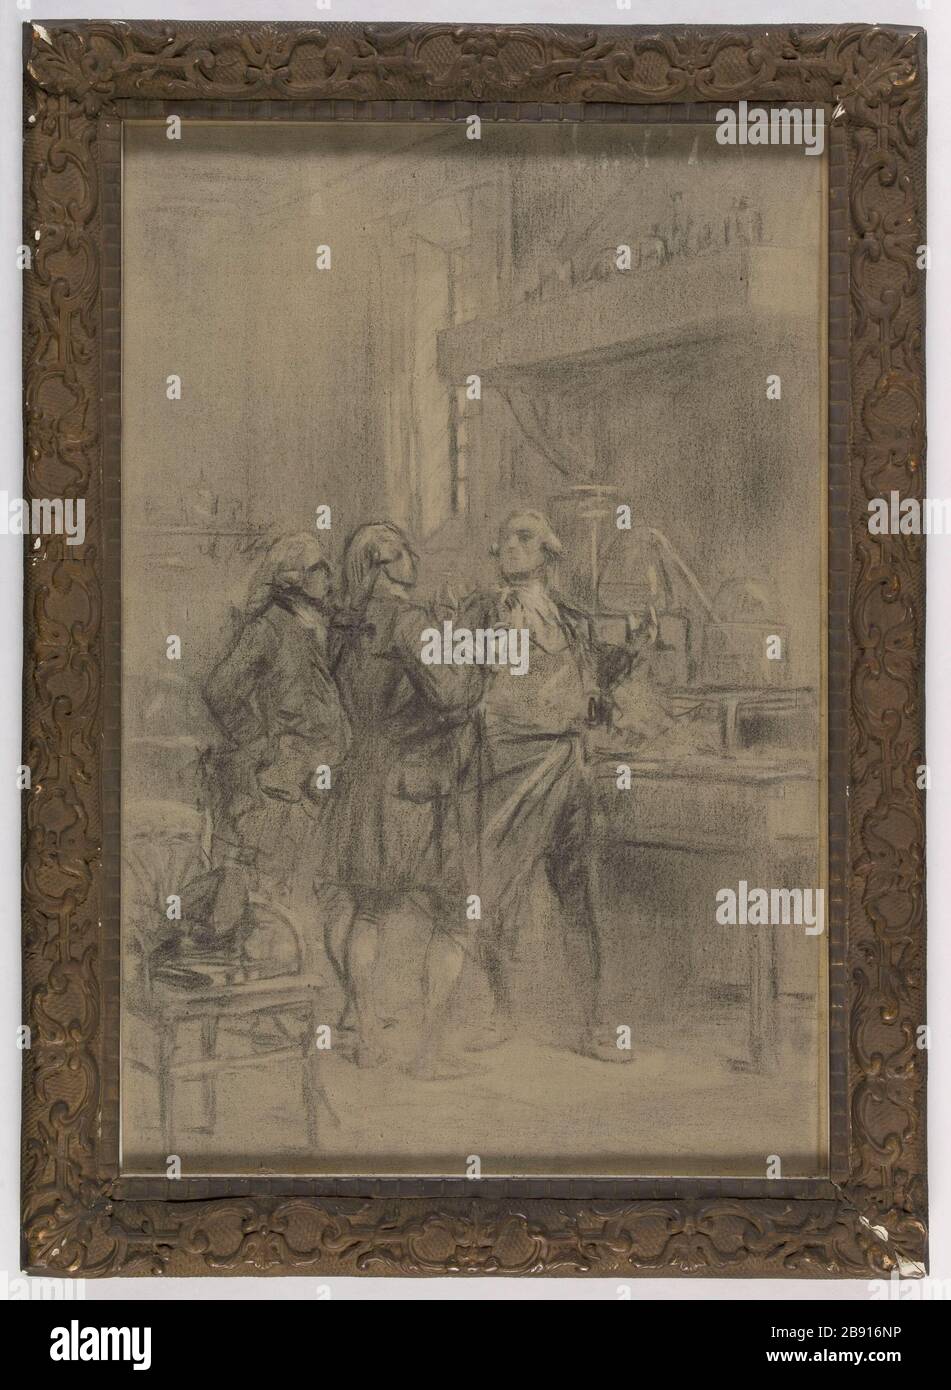 OUTLINE FOR DECORATION SORBONNE Theobald Chartran (1849-1907). 'Esquisse pour la décoration de la Sorbonne'. Fusain et craie blanche sur toile. Paris, musée Carnavalet. Stock Photo